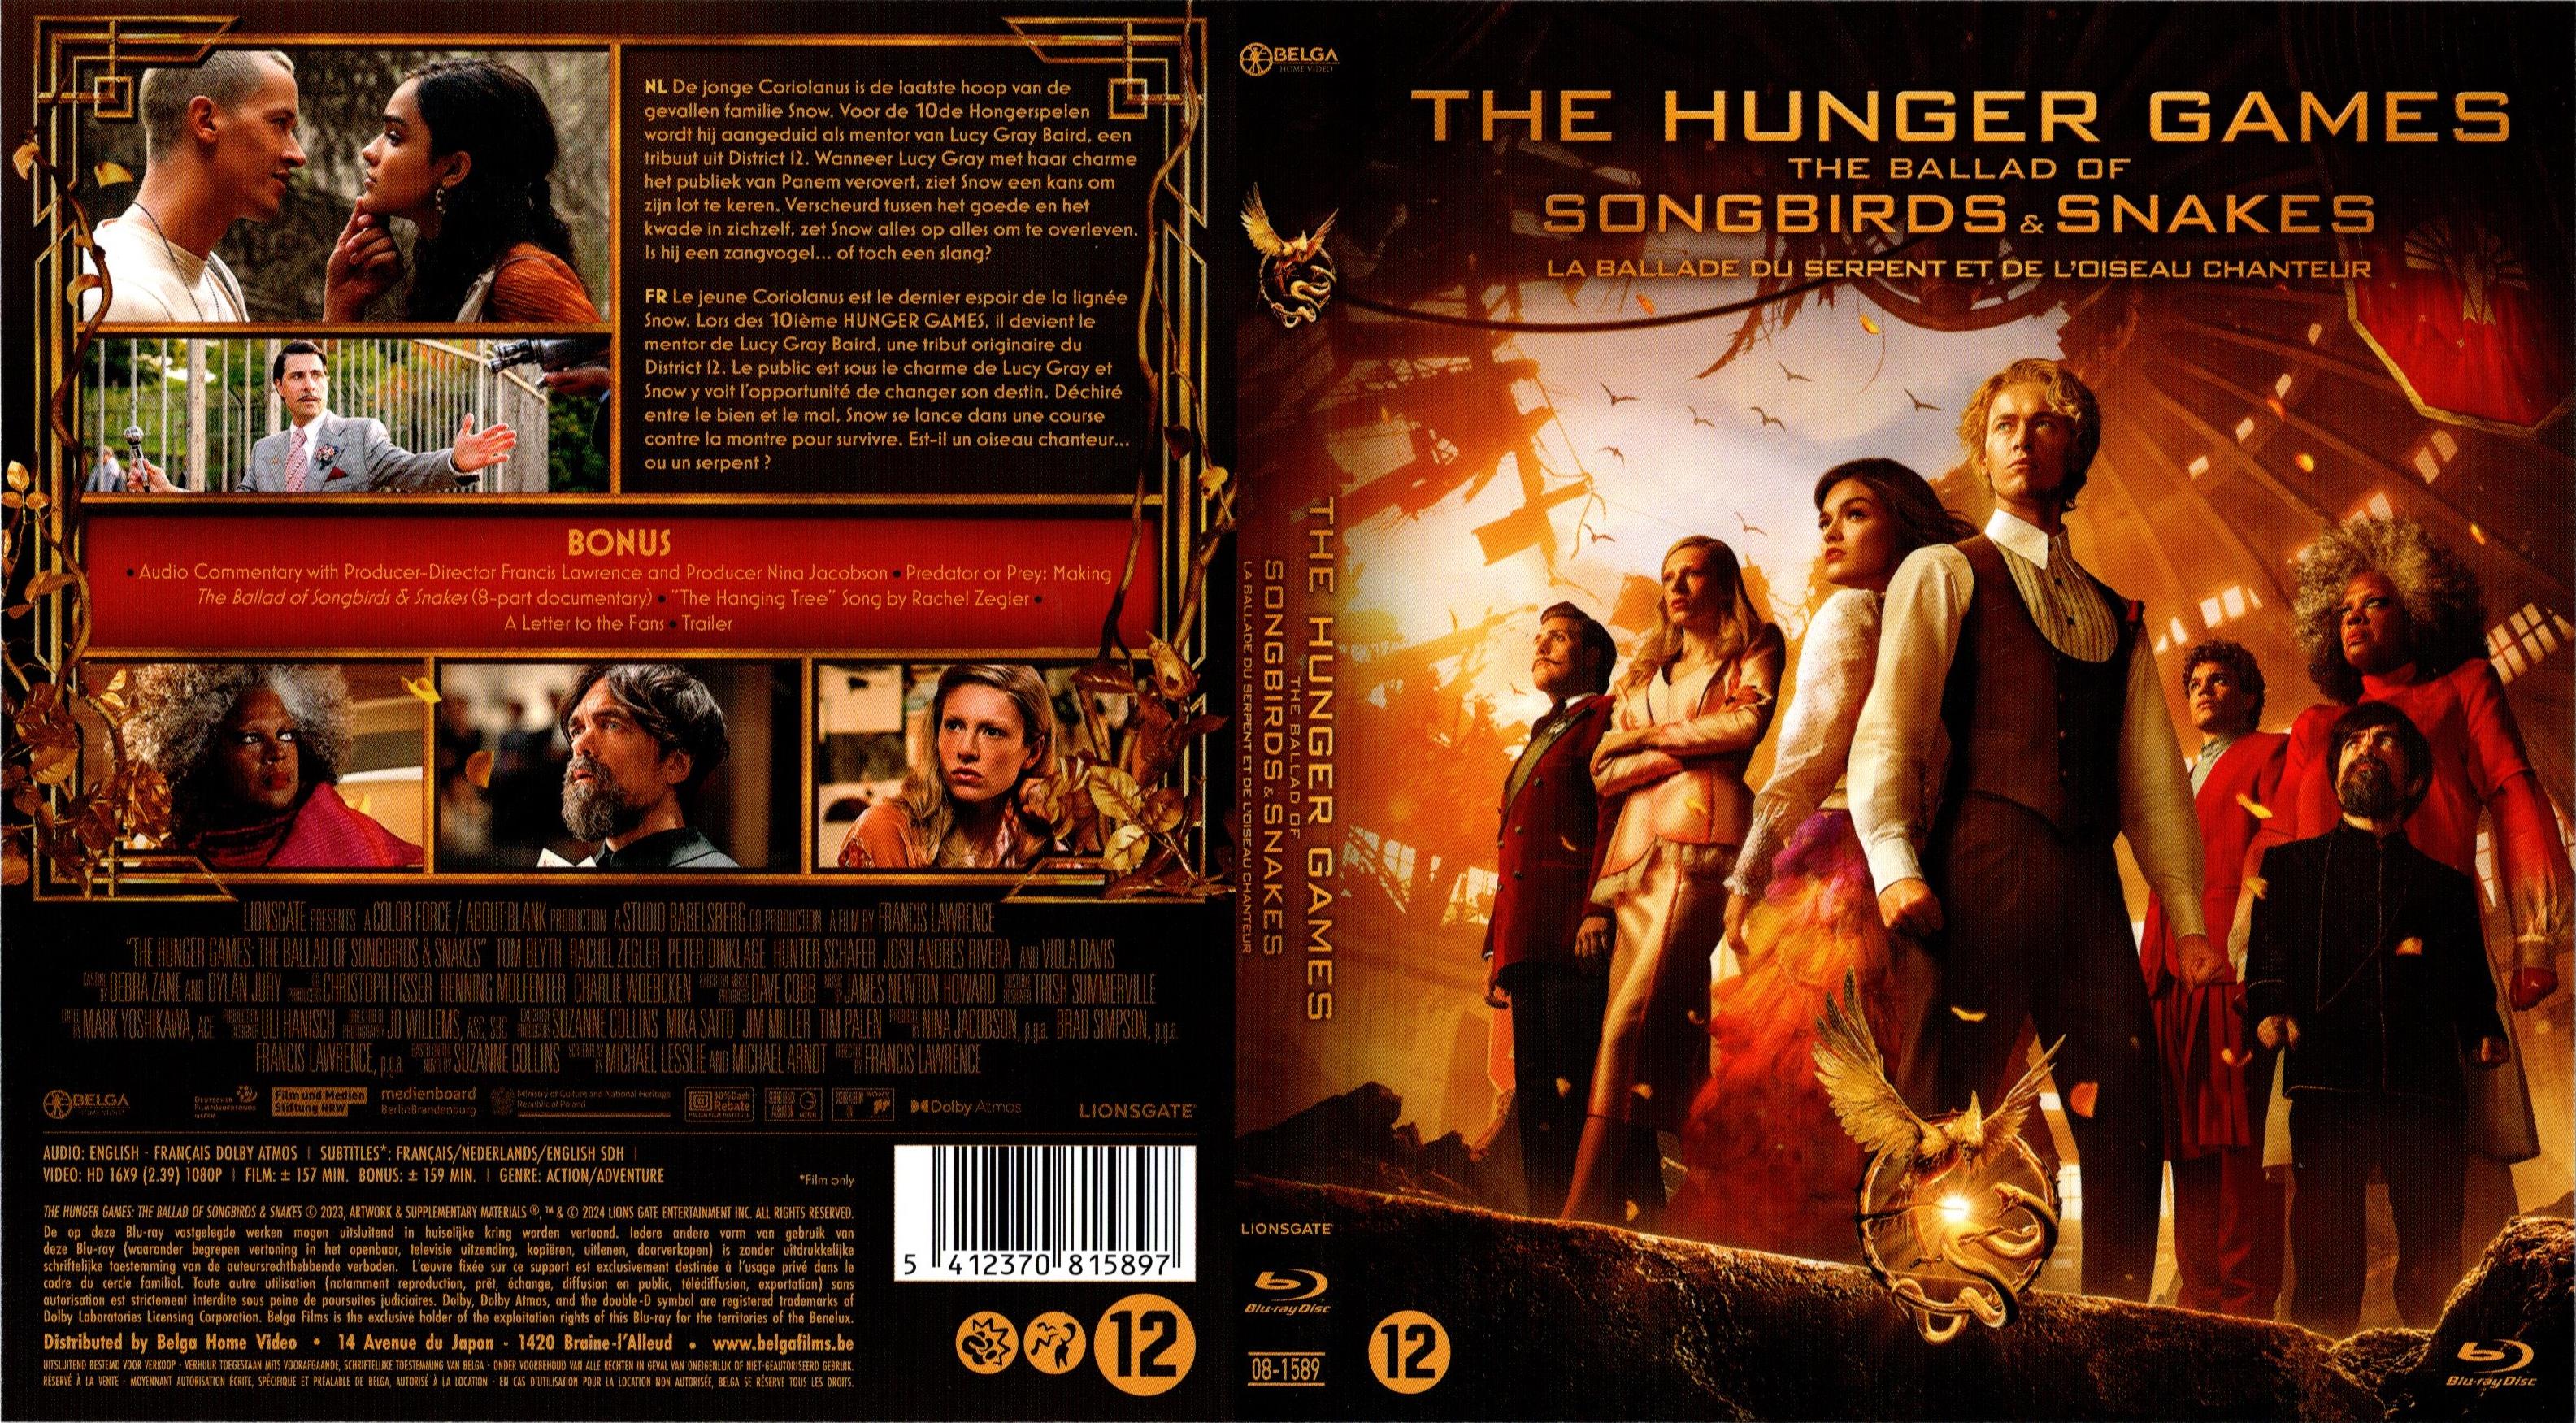 Jaquette DVD Hunger Games La Ballade du serpent et de l